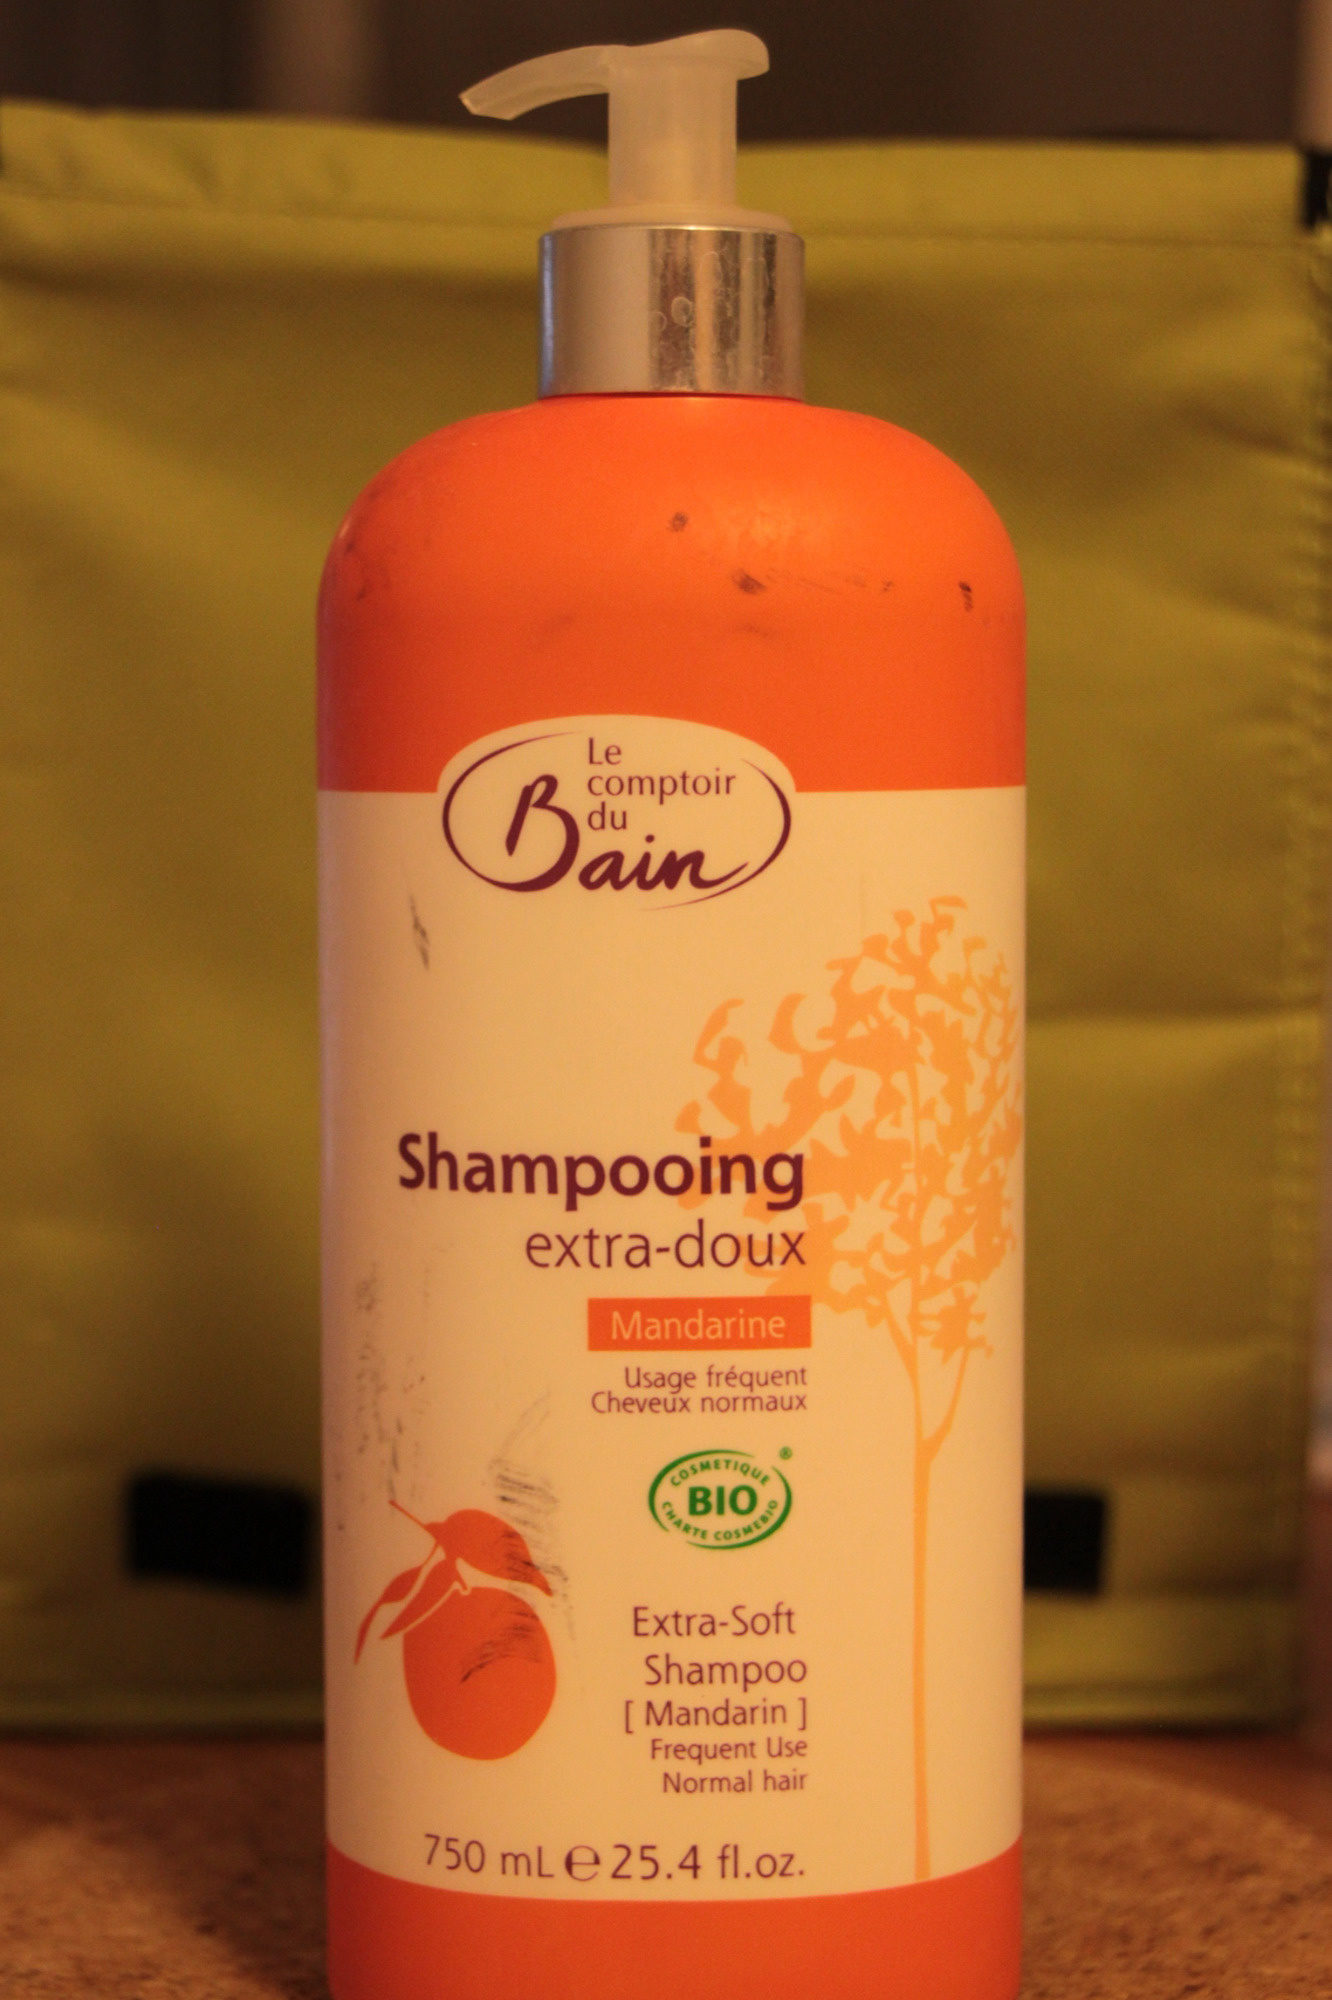 Shampooing extra-doux Mandarine - Product - fr